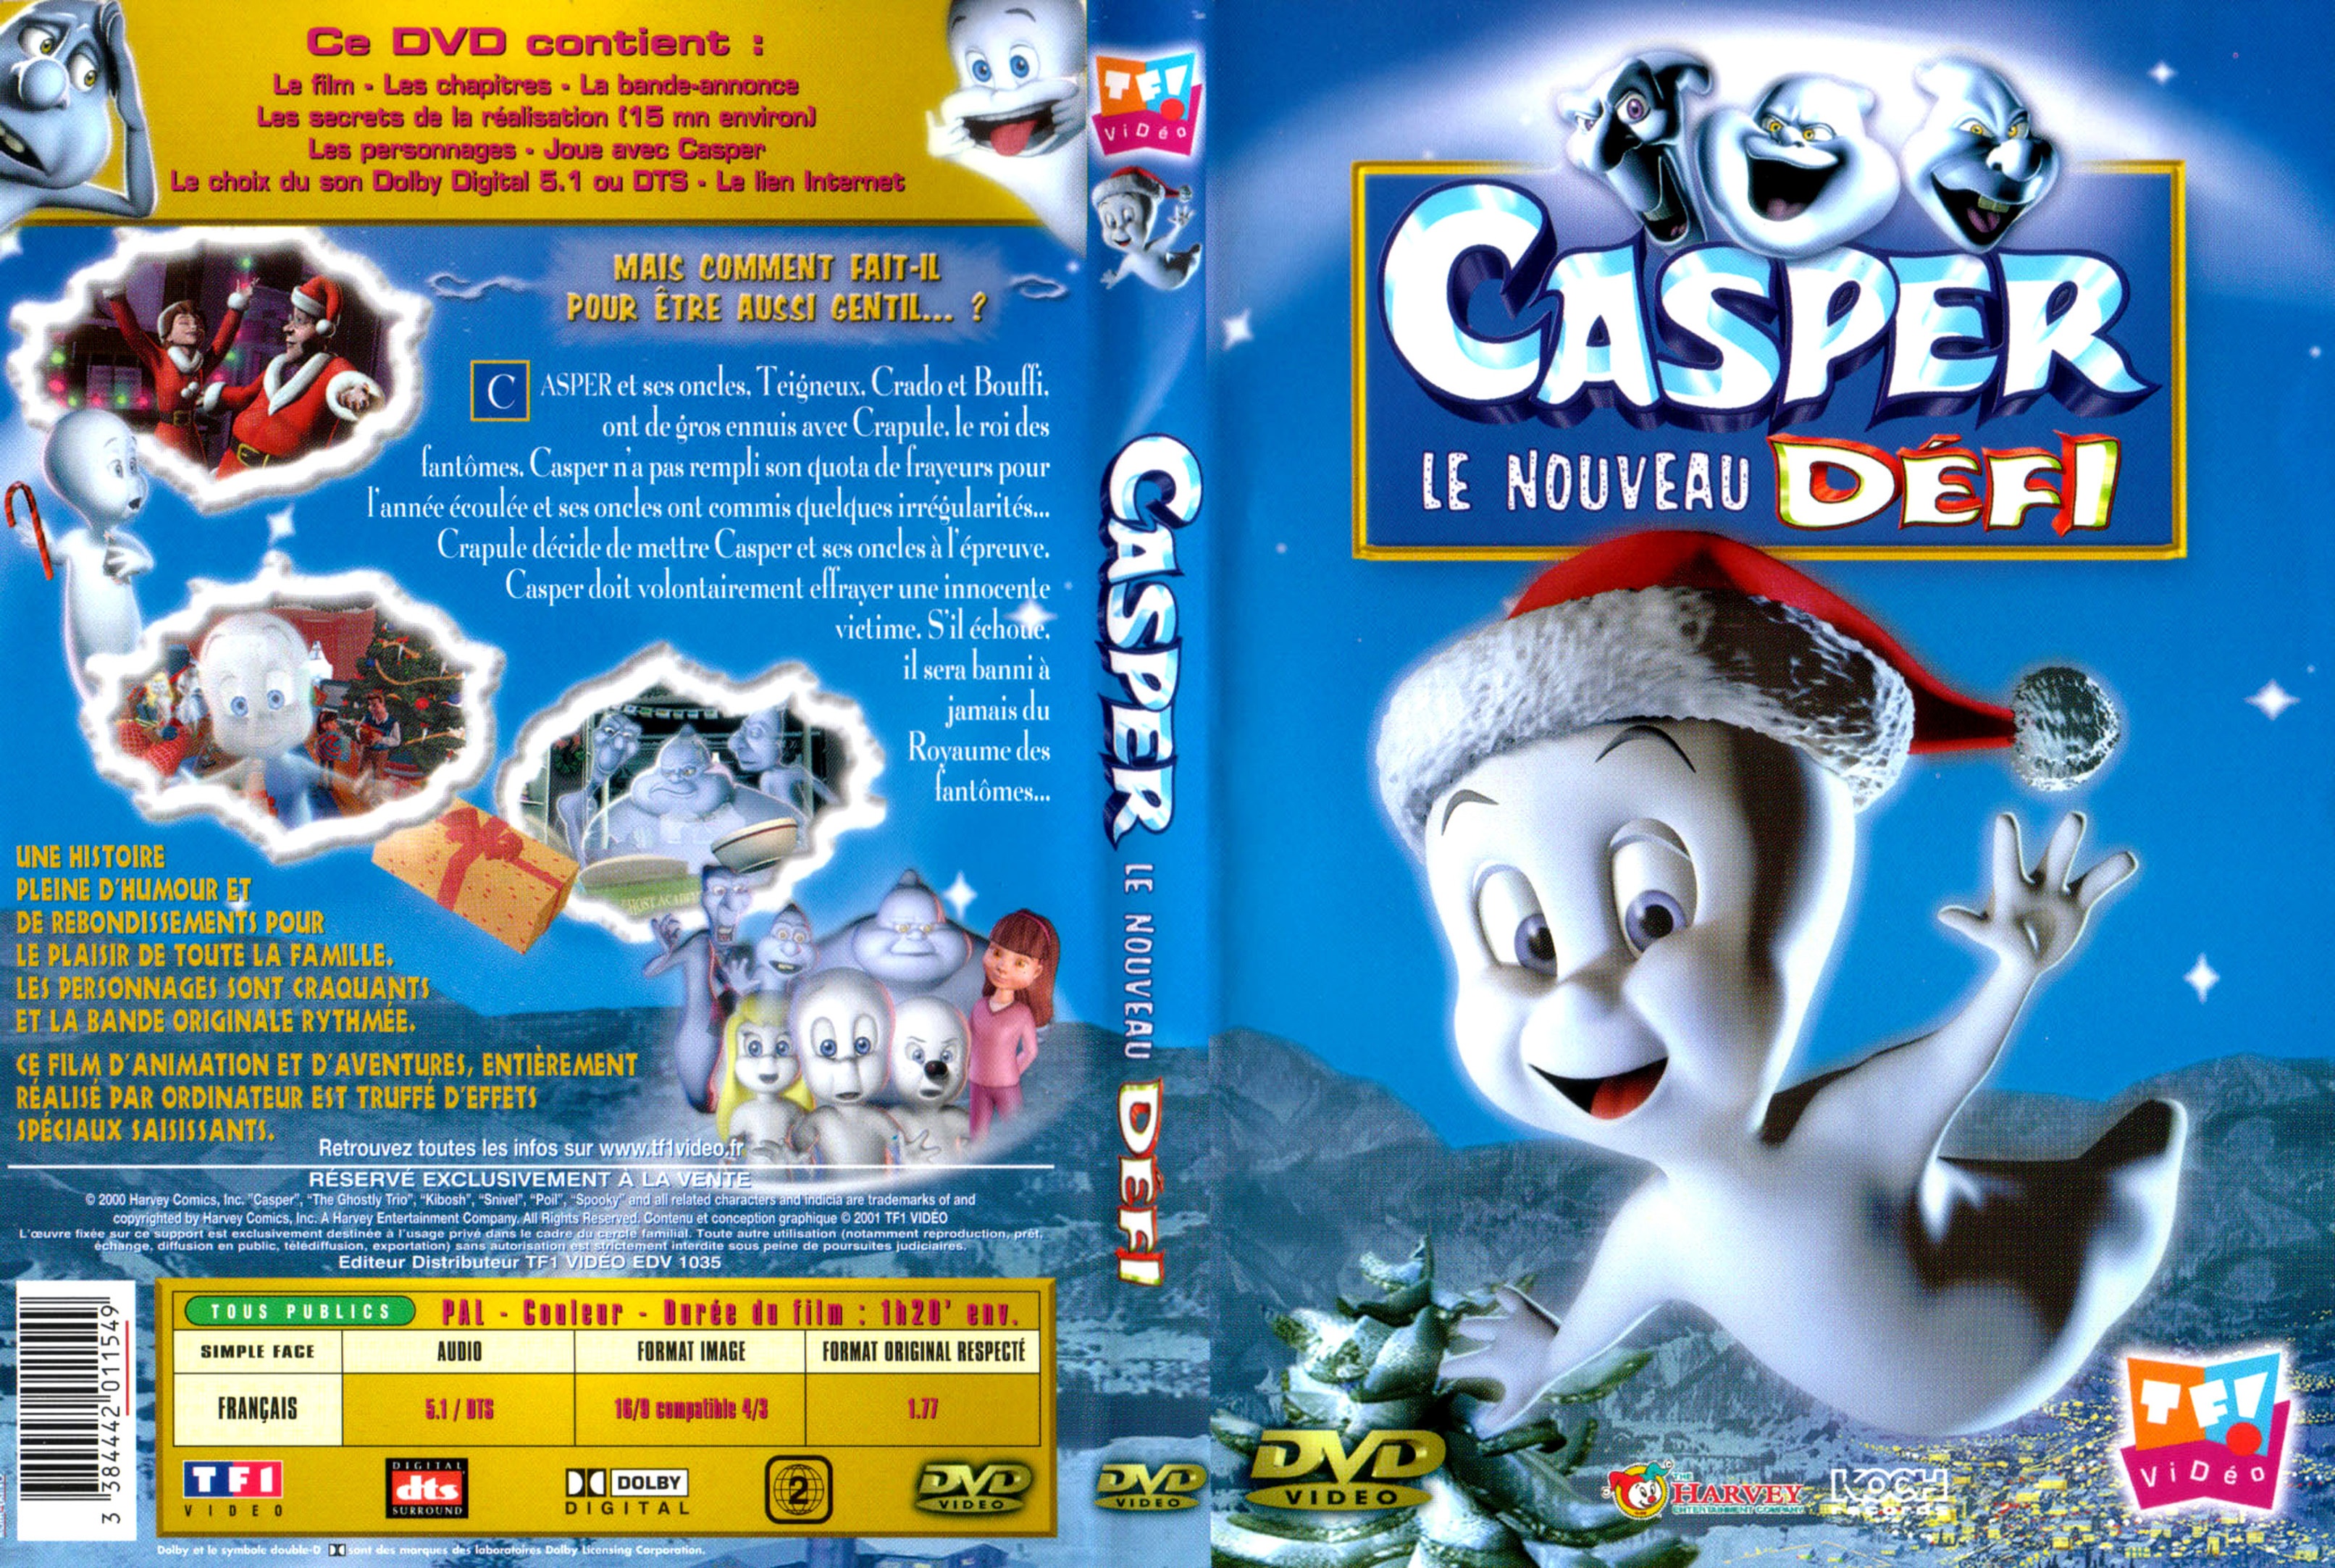 Jaquette DVD Casper le nouveau defi